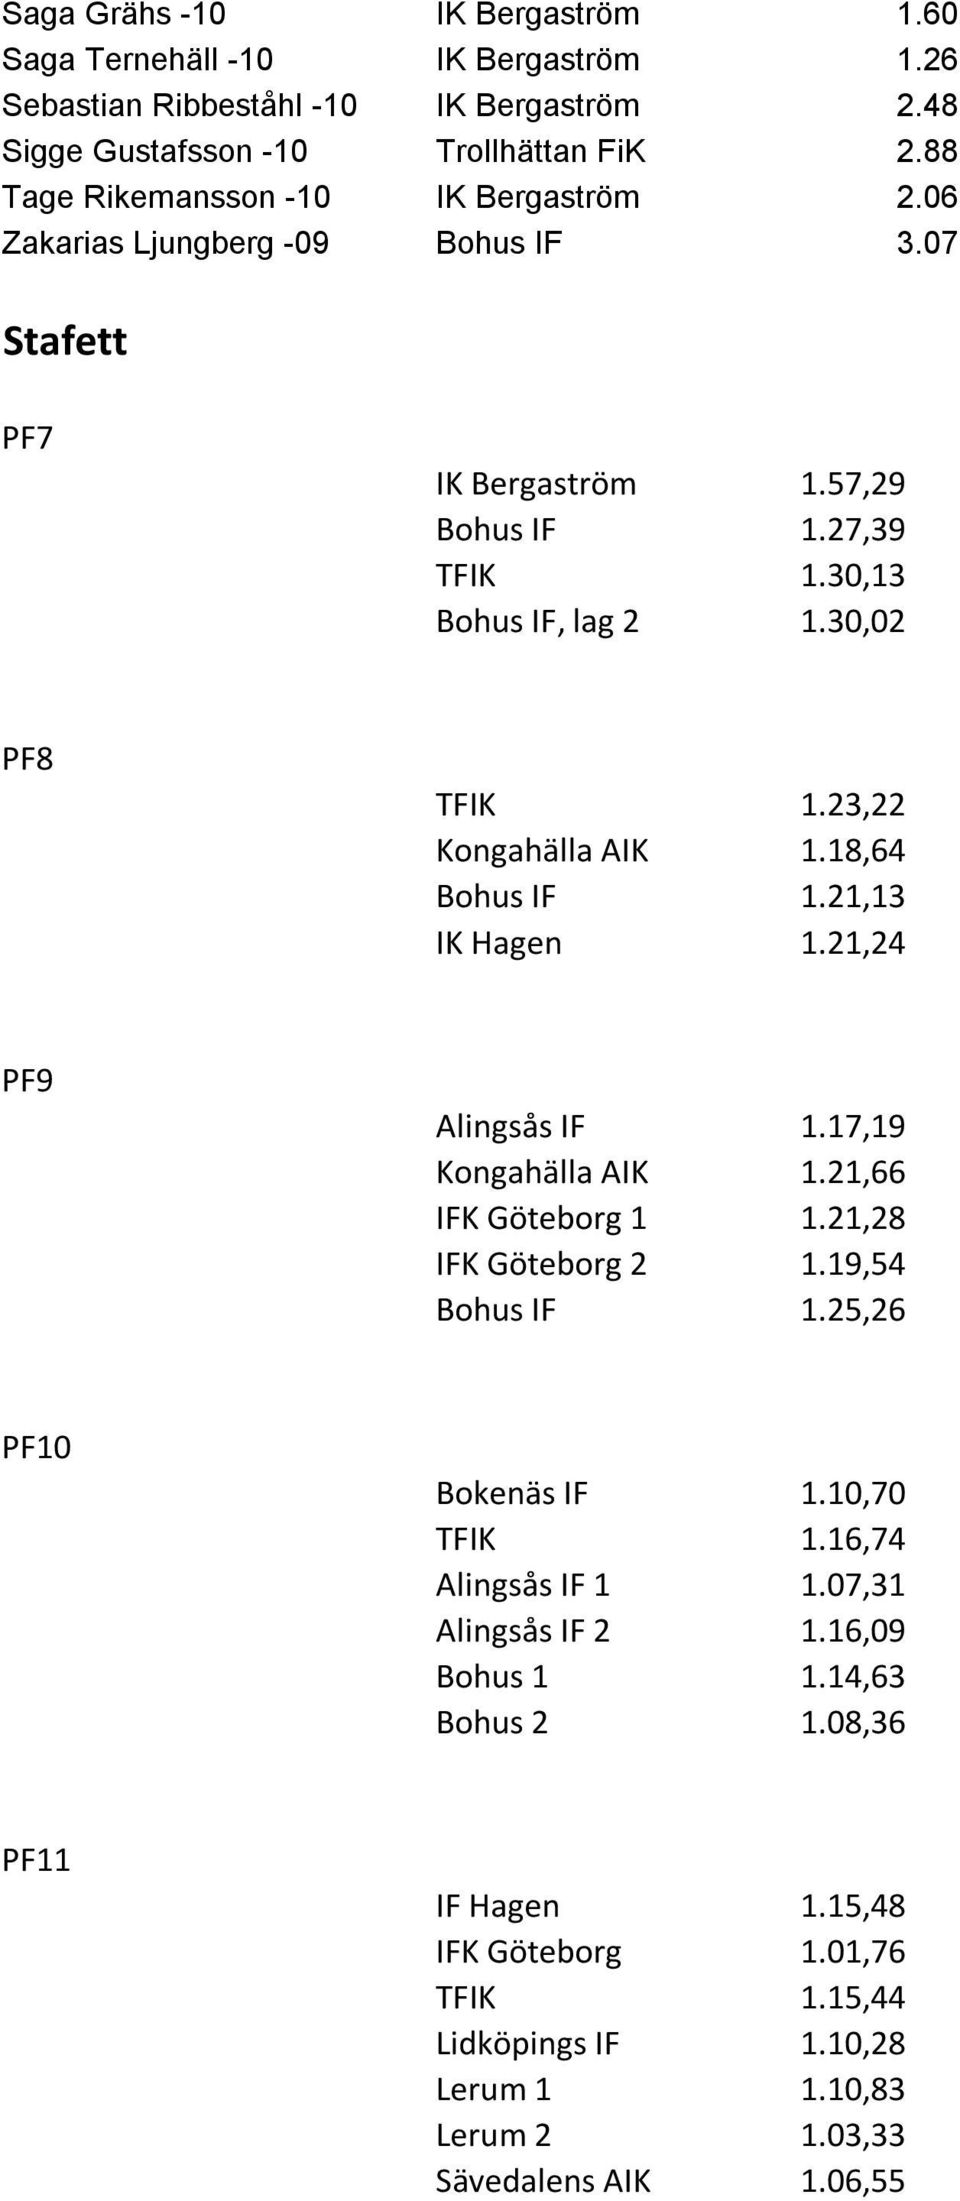 23,22 Kongahälla AIK 1.18,64 Bohus IF 1.21,13 IK Hagen 1.21,24 PF9 Alingsås IF 1.17,19 Kongahälla AIK 1.21,66 IFK Göteborg 1 1.21,28 IFK Göteborg 2 1.19,54 Bohus IF 1.